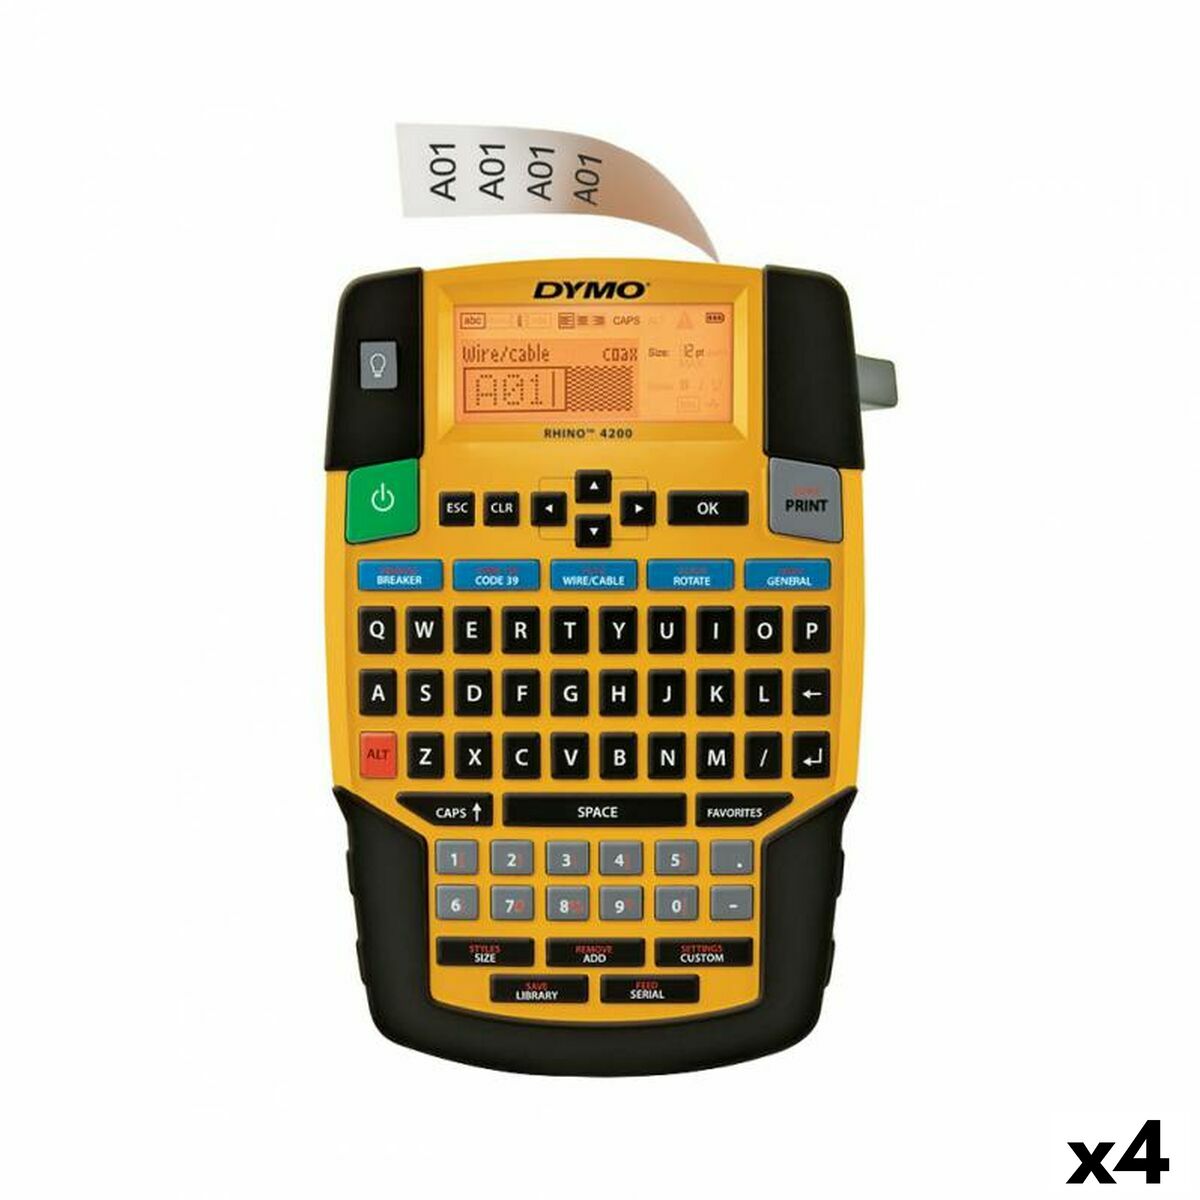 Etichettatrice Elettrica Portatile Dymo 4200 (4 Unità)